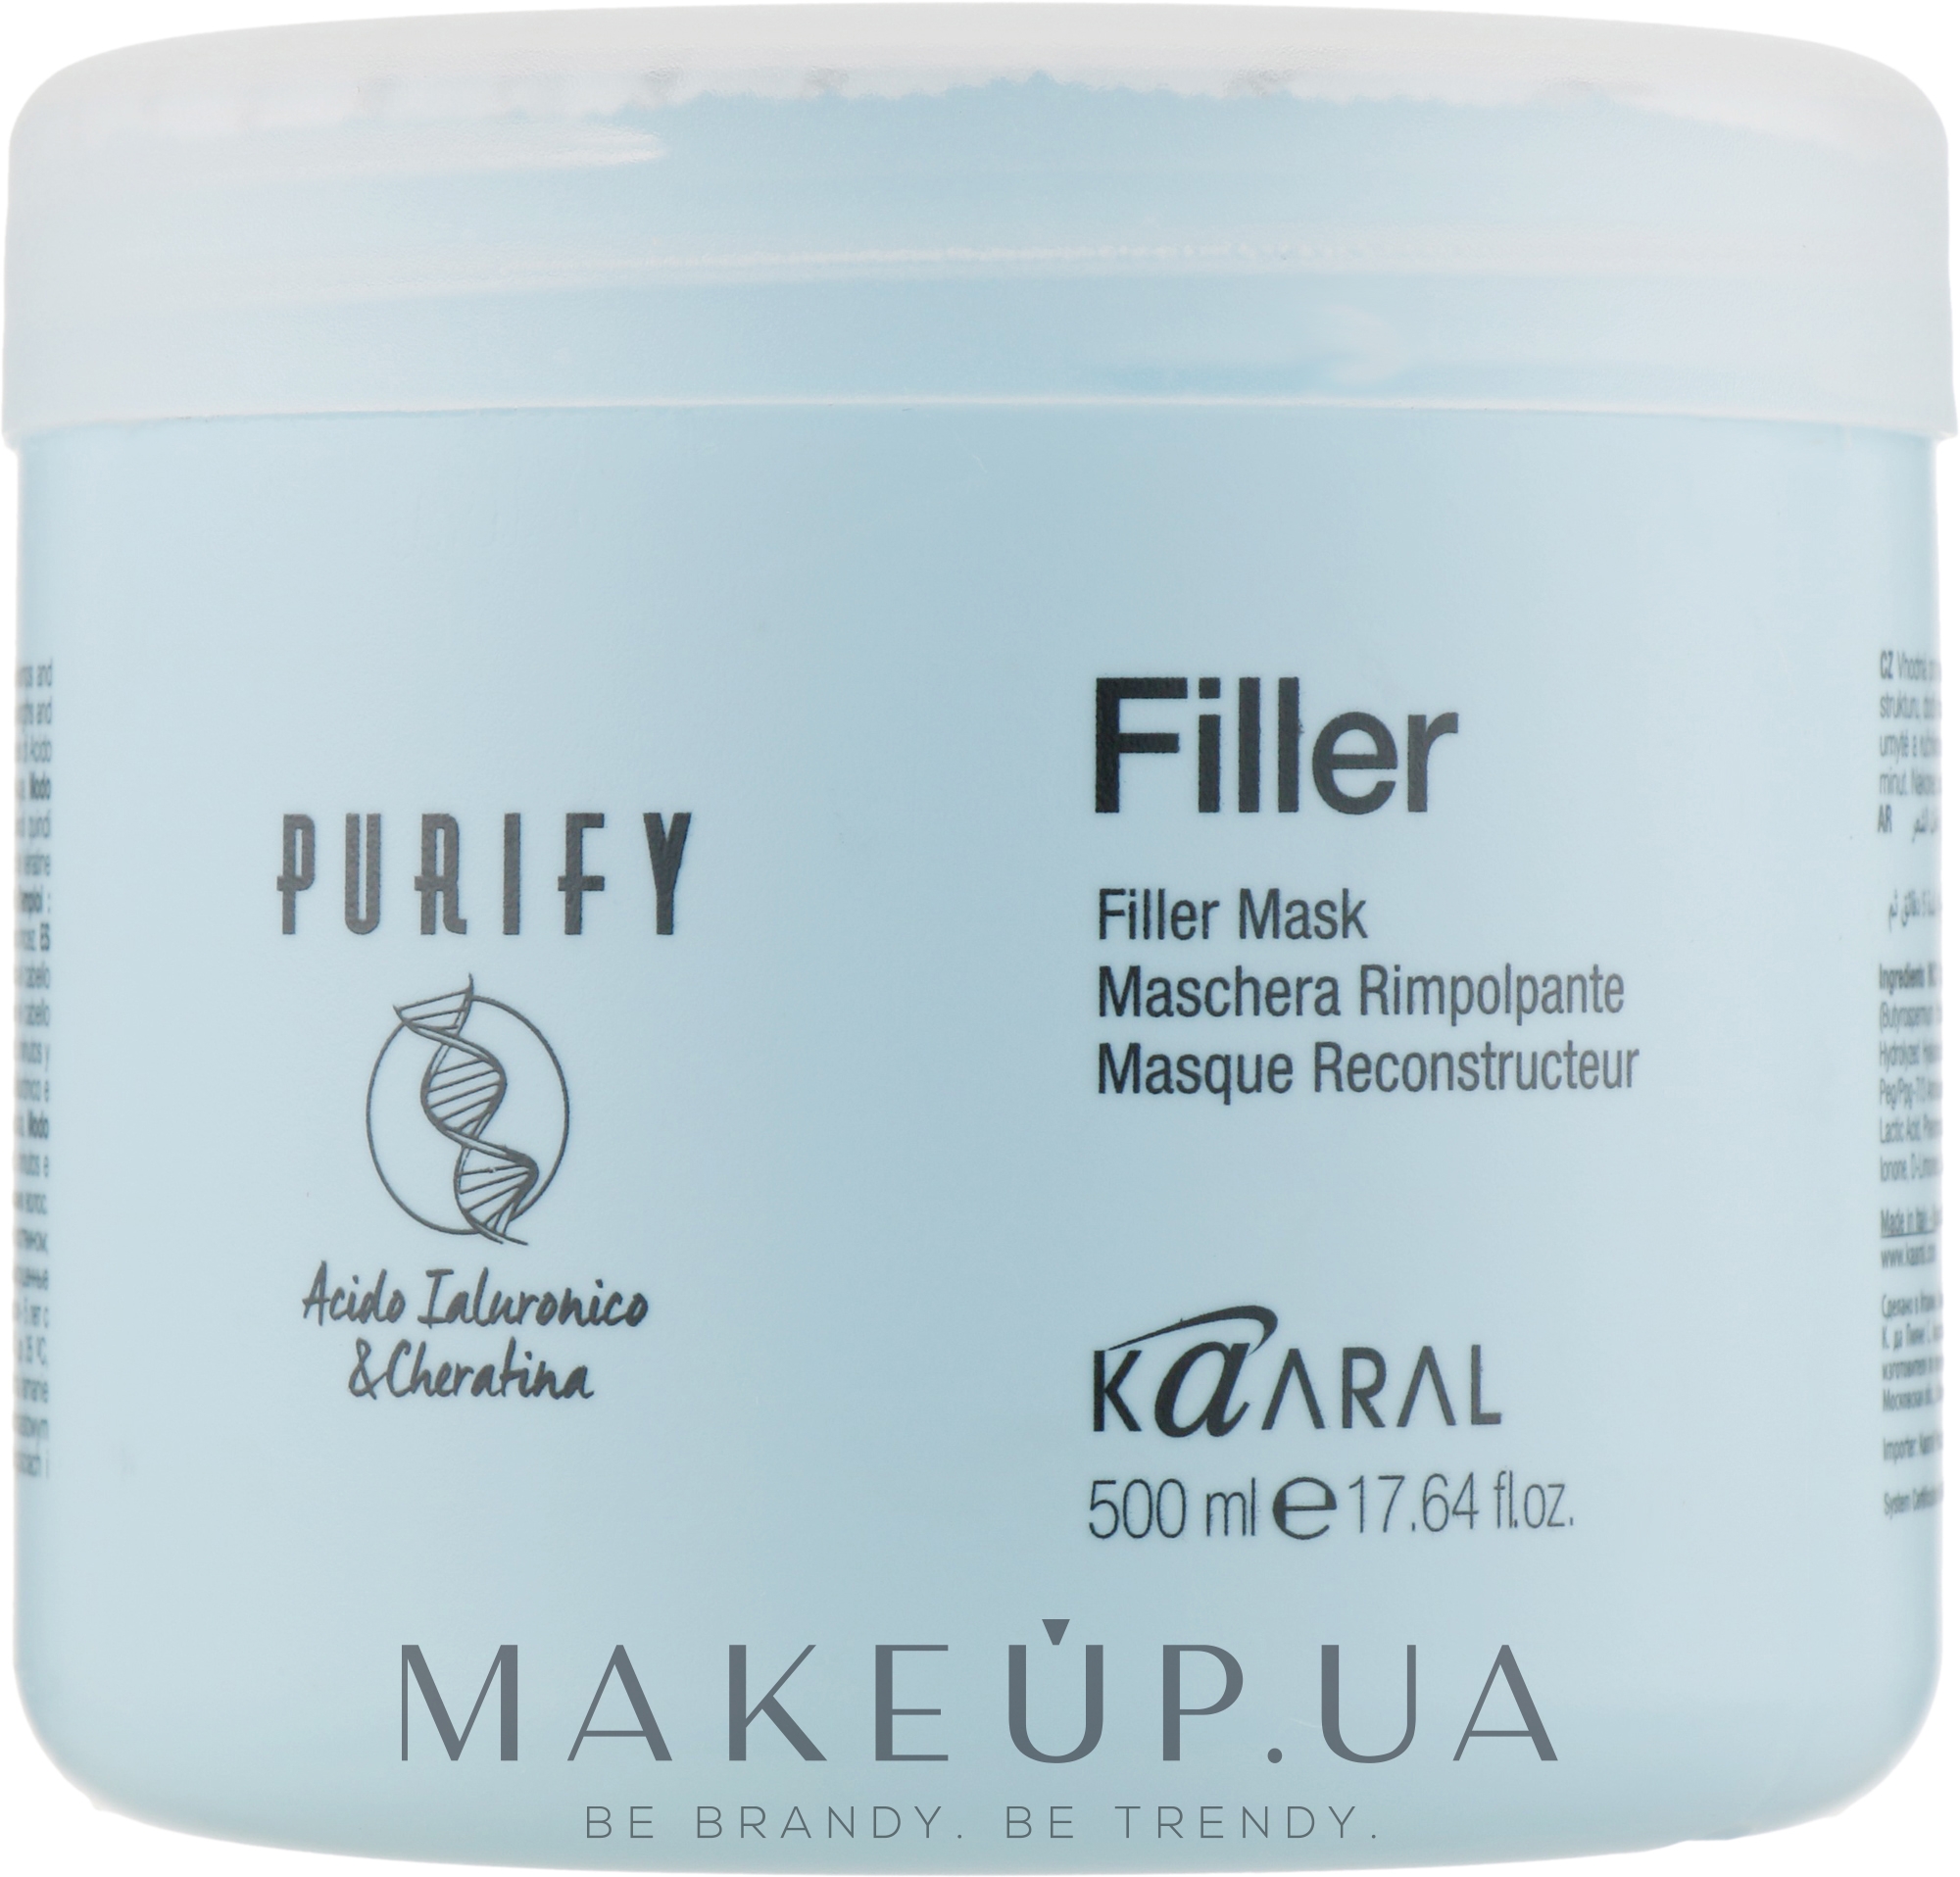 Маска-филлер для волос с кератином и гиалуроновой кислотой - Kaaral Purify Filler Mask  — фото 500ml